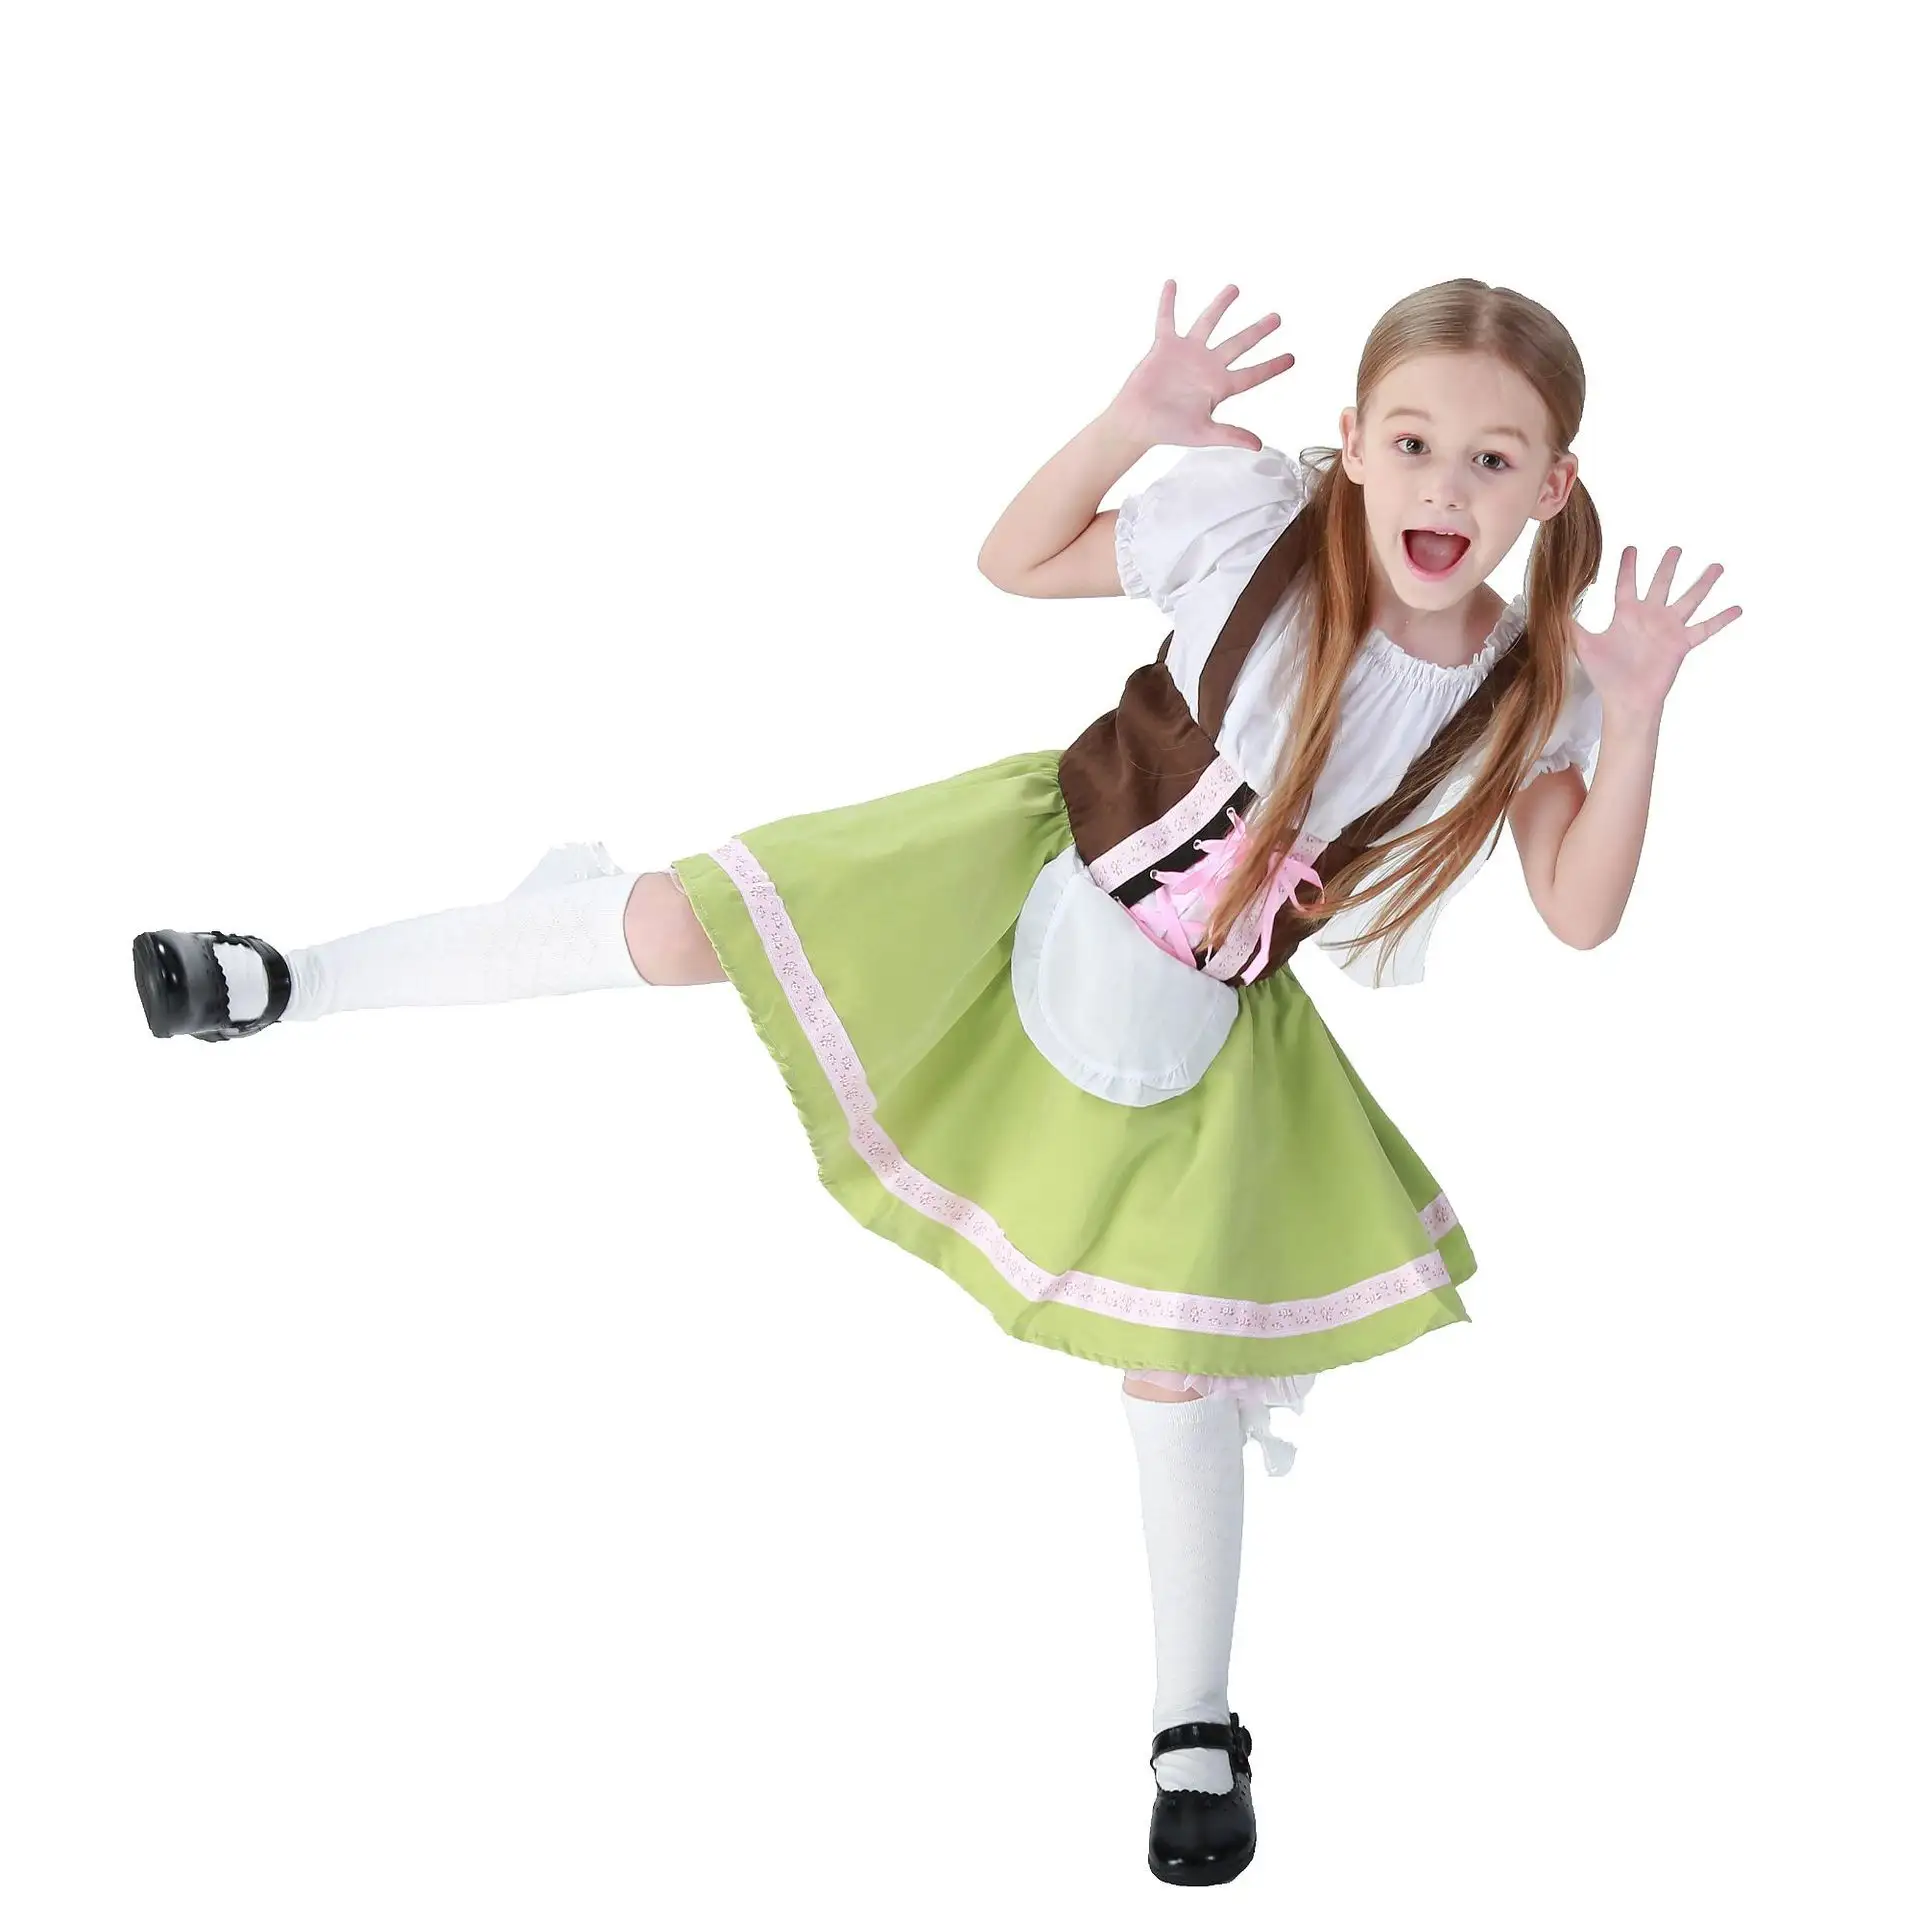 Nette Fee Kleidung für Mädchen Kleid Halloween Kinder Sets Cosplay Kostüm Party Rollenspiel Dress Up Maid Kleider